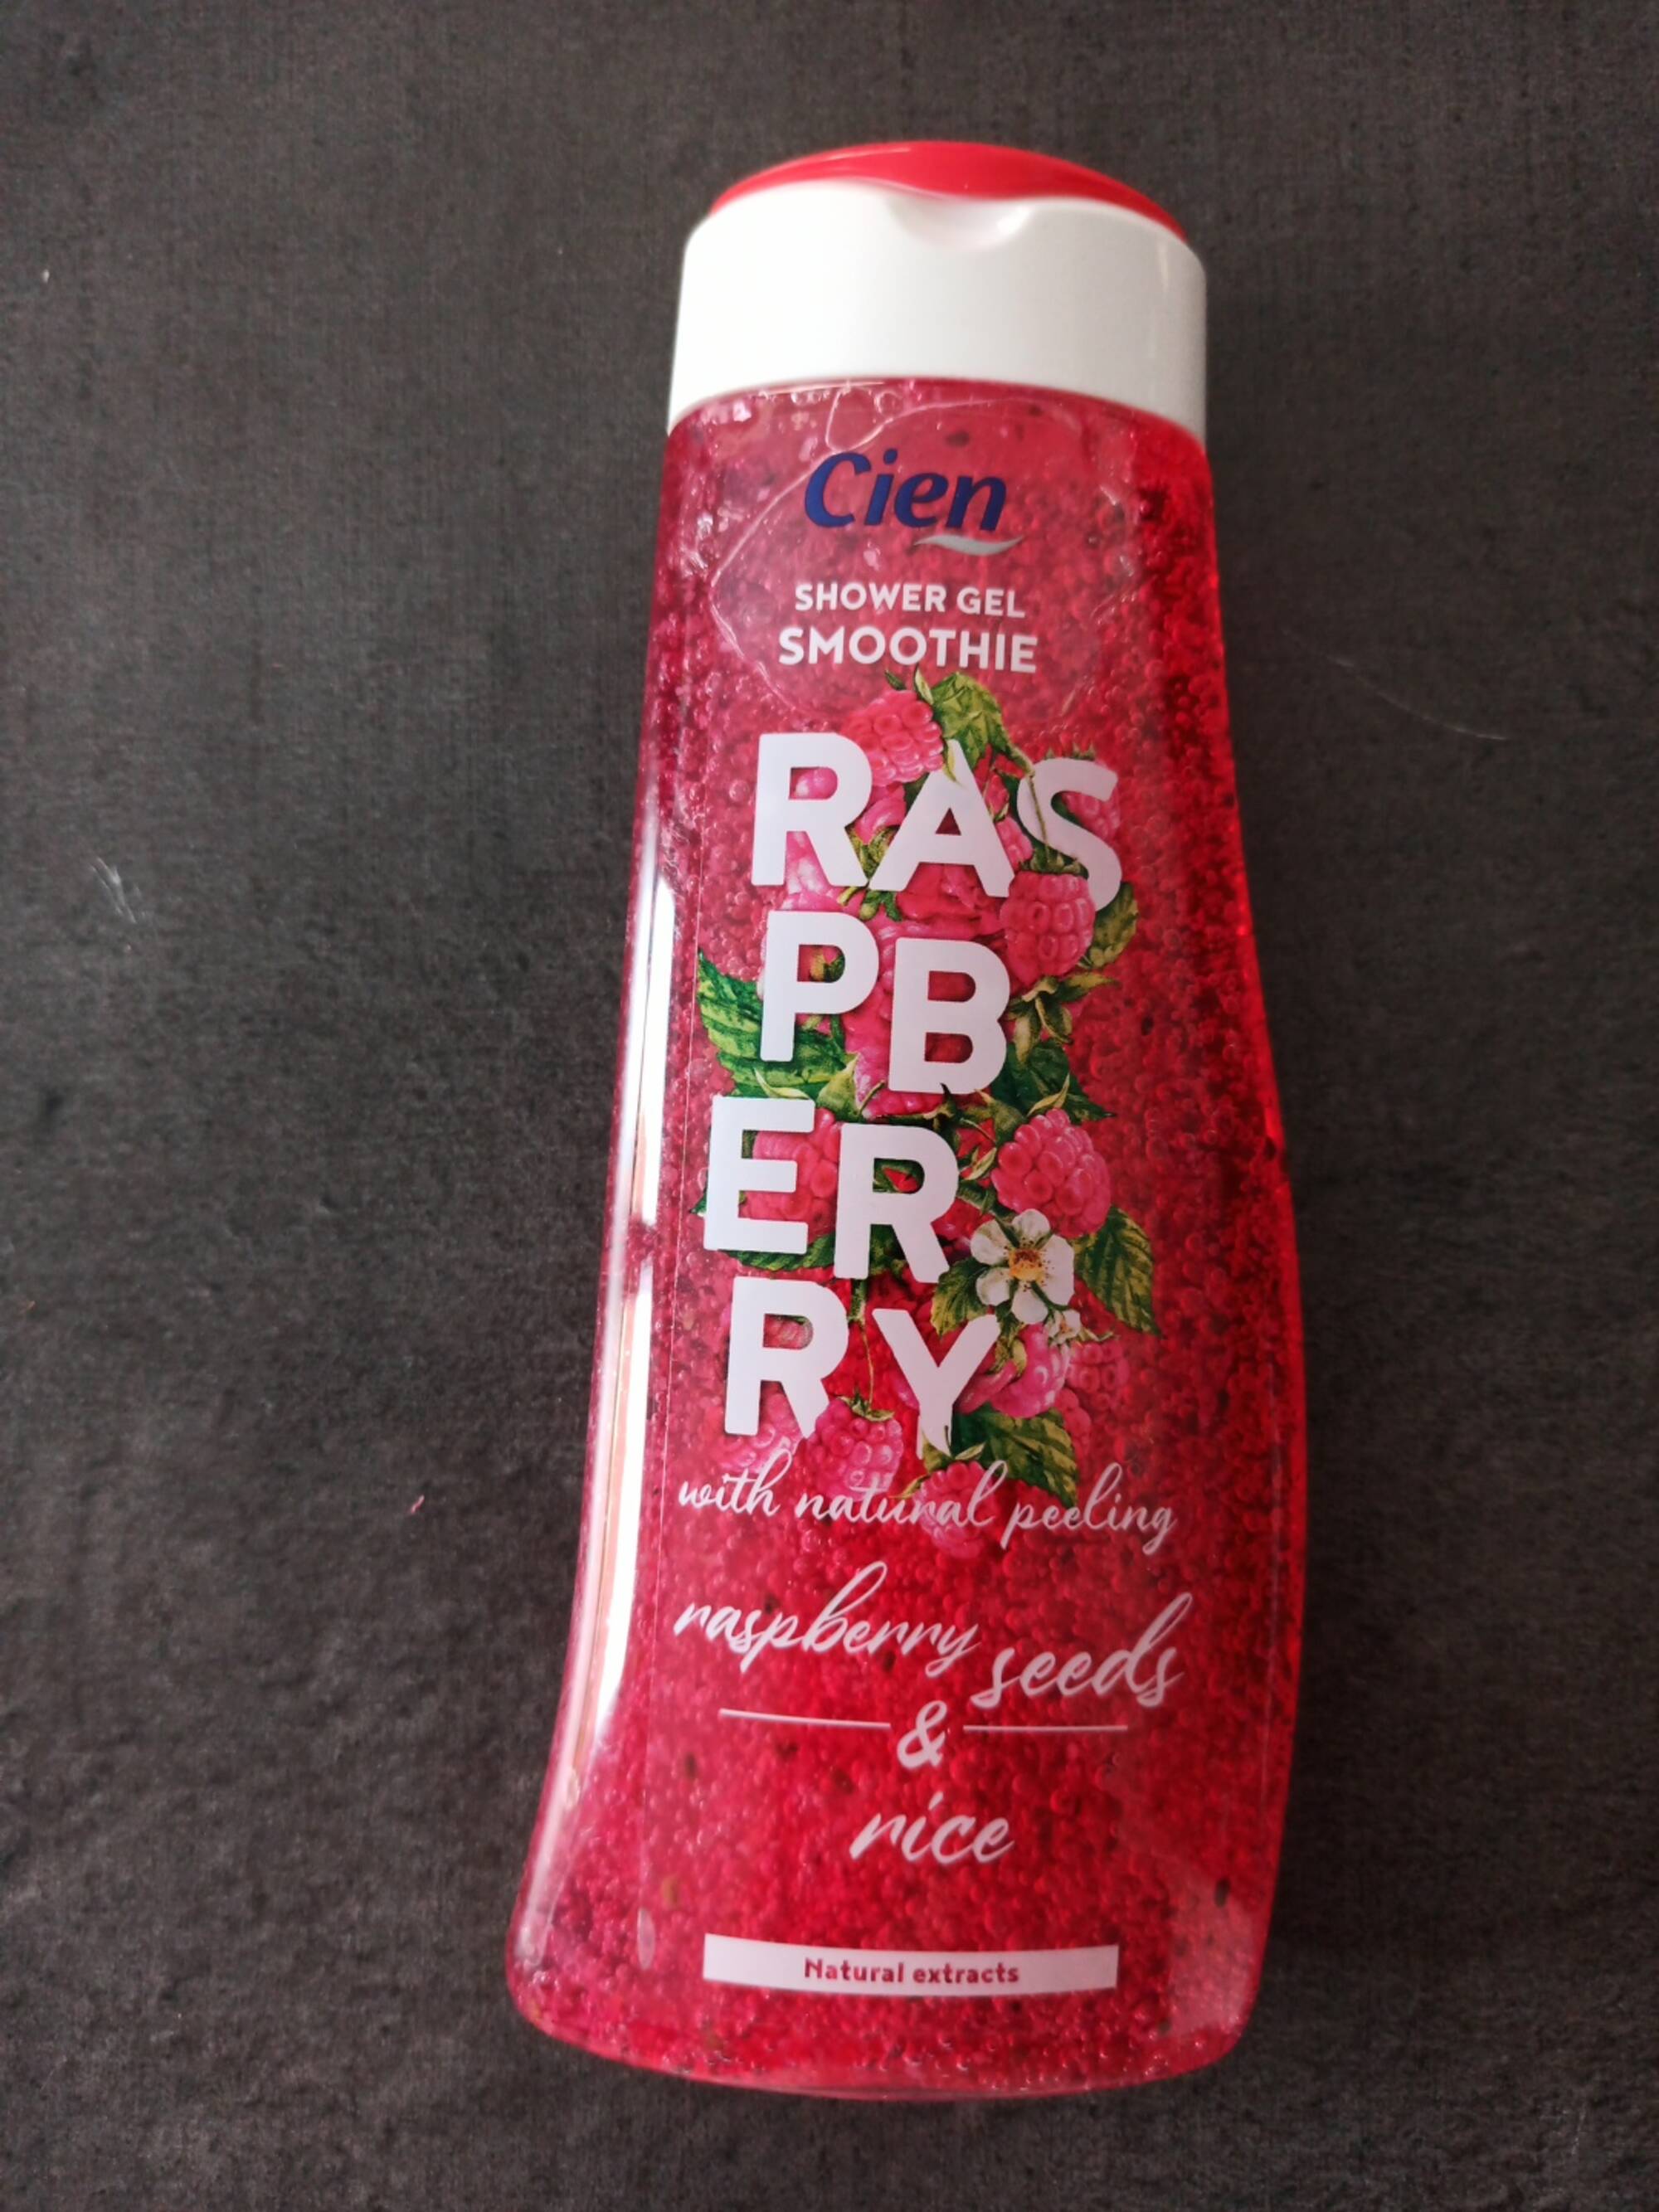 CIEN - Shower gel smoothie raspberry